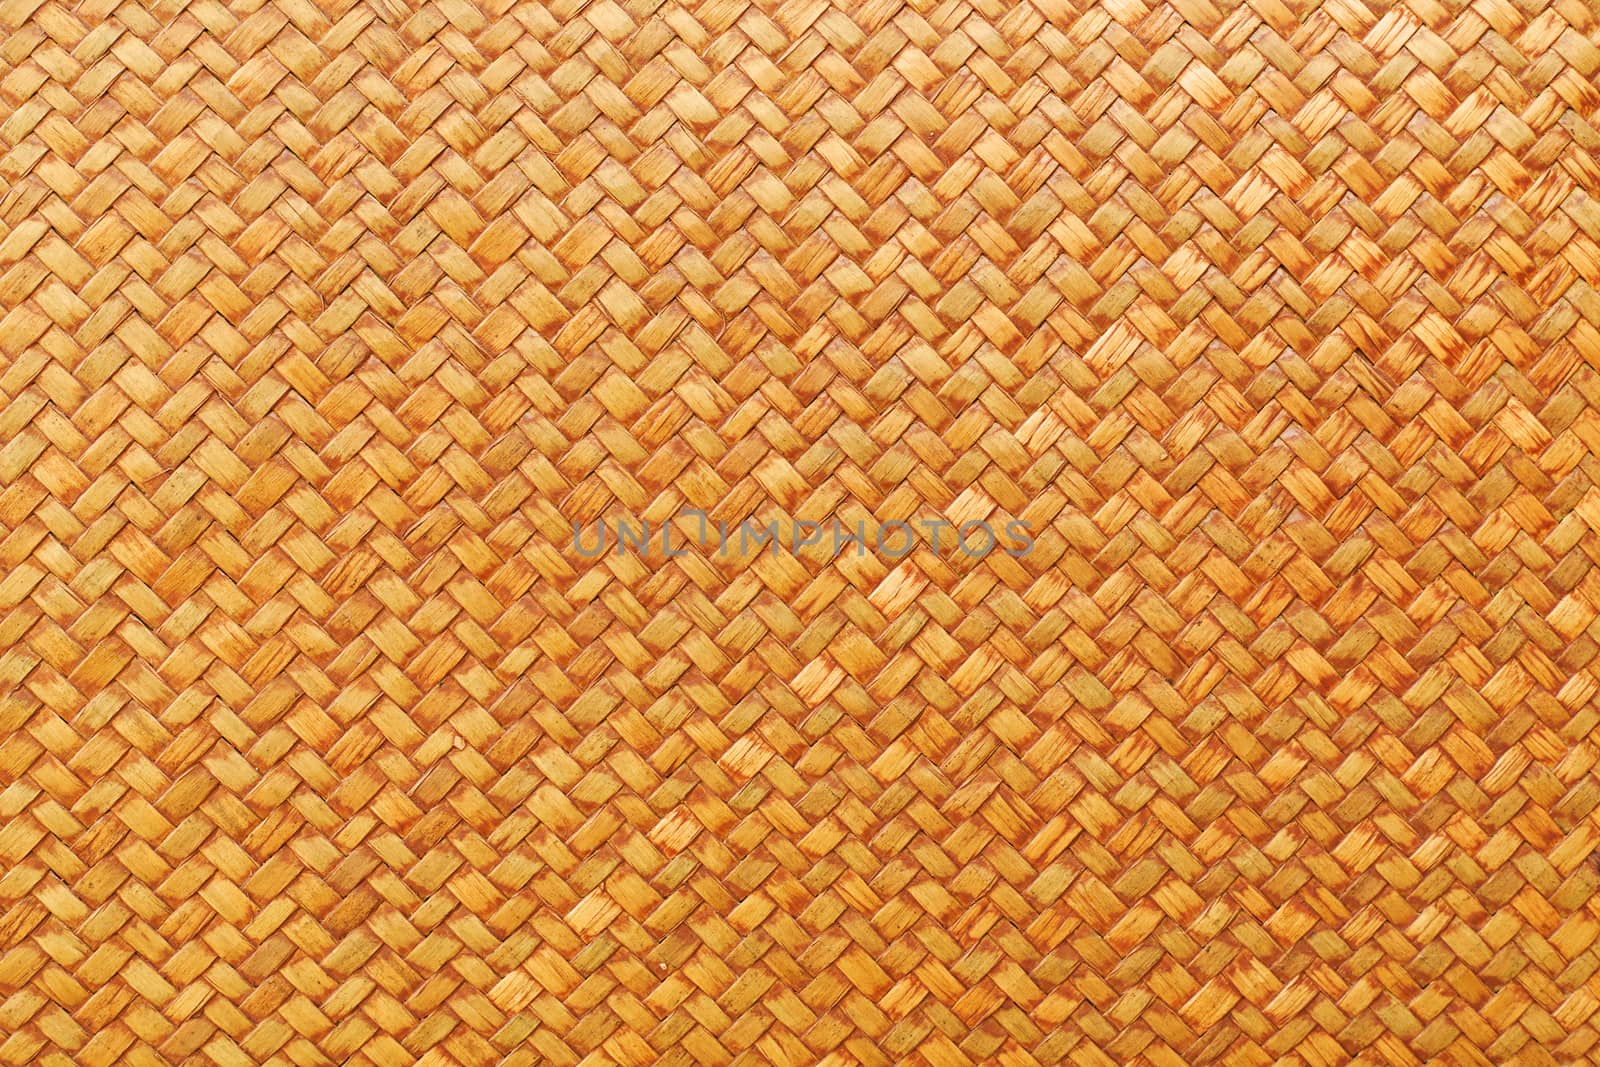 Brown rattan texture background pattern.